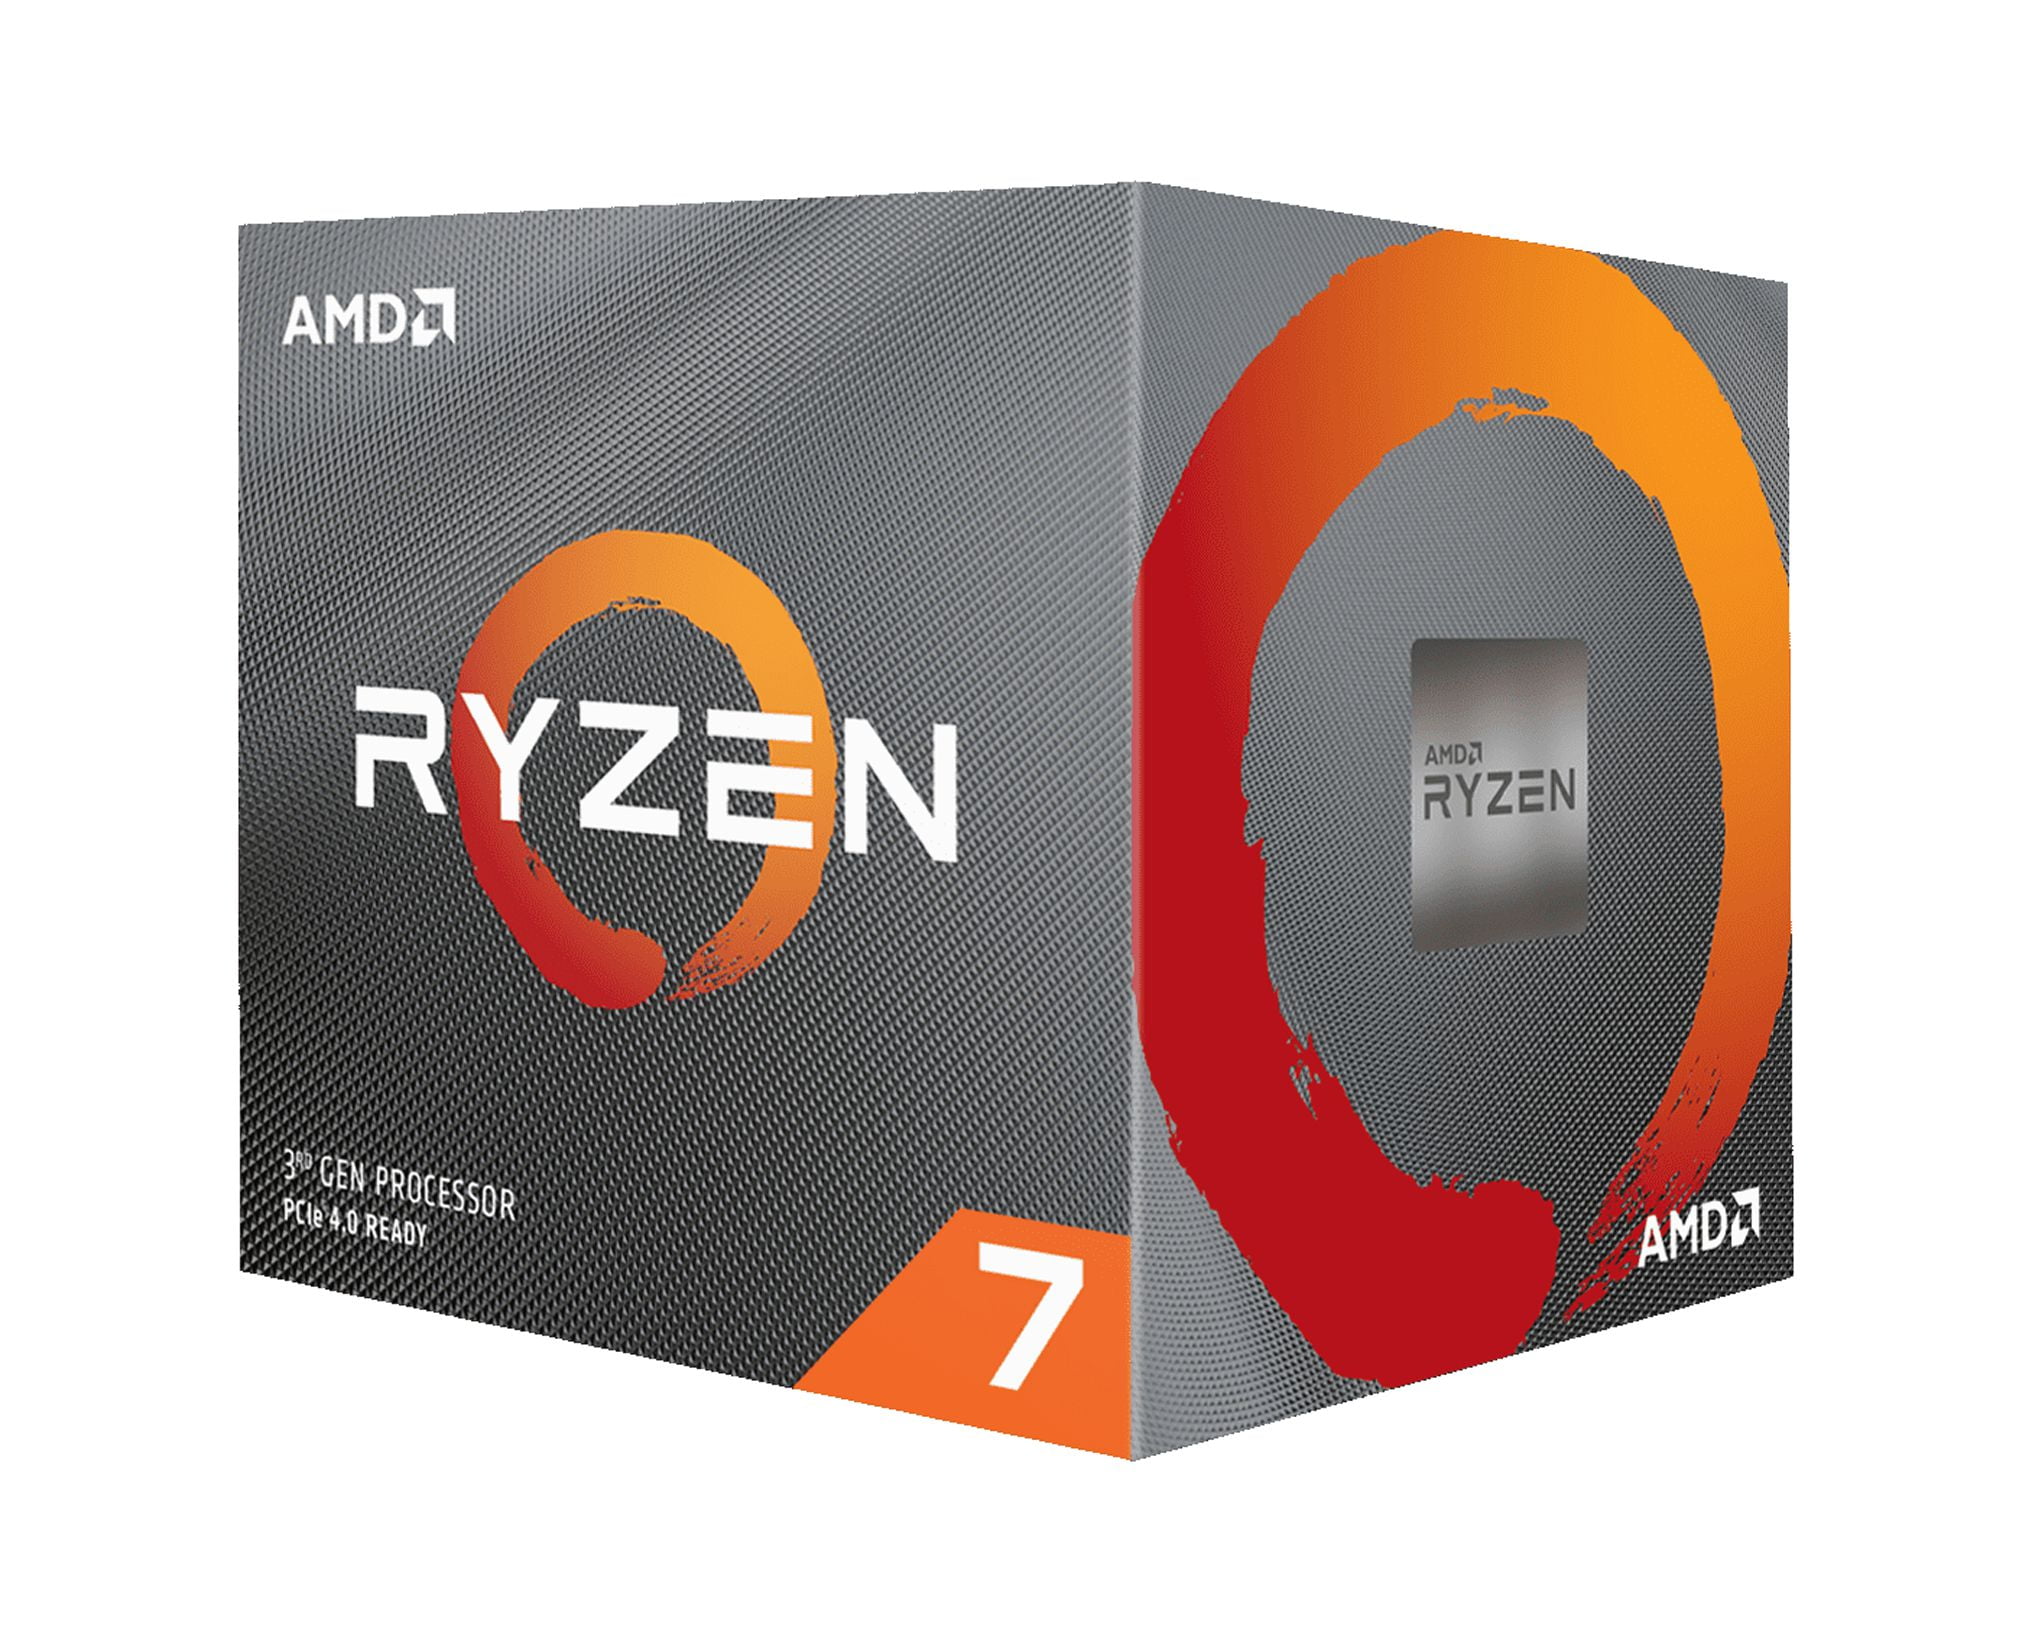  AMD Ryzen 7 3700X 8-Core, 16-Thread Unlocked Desktop